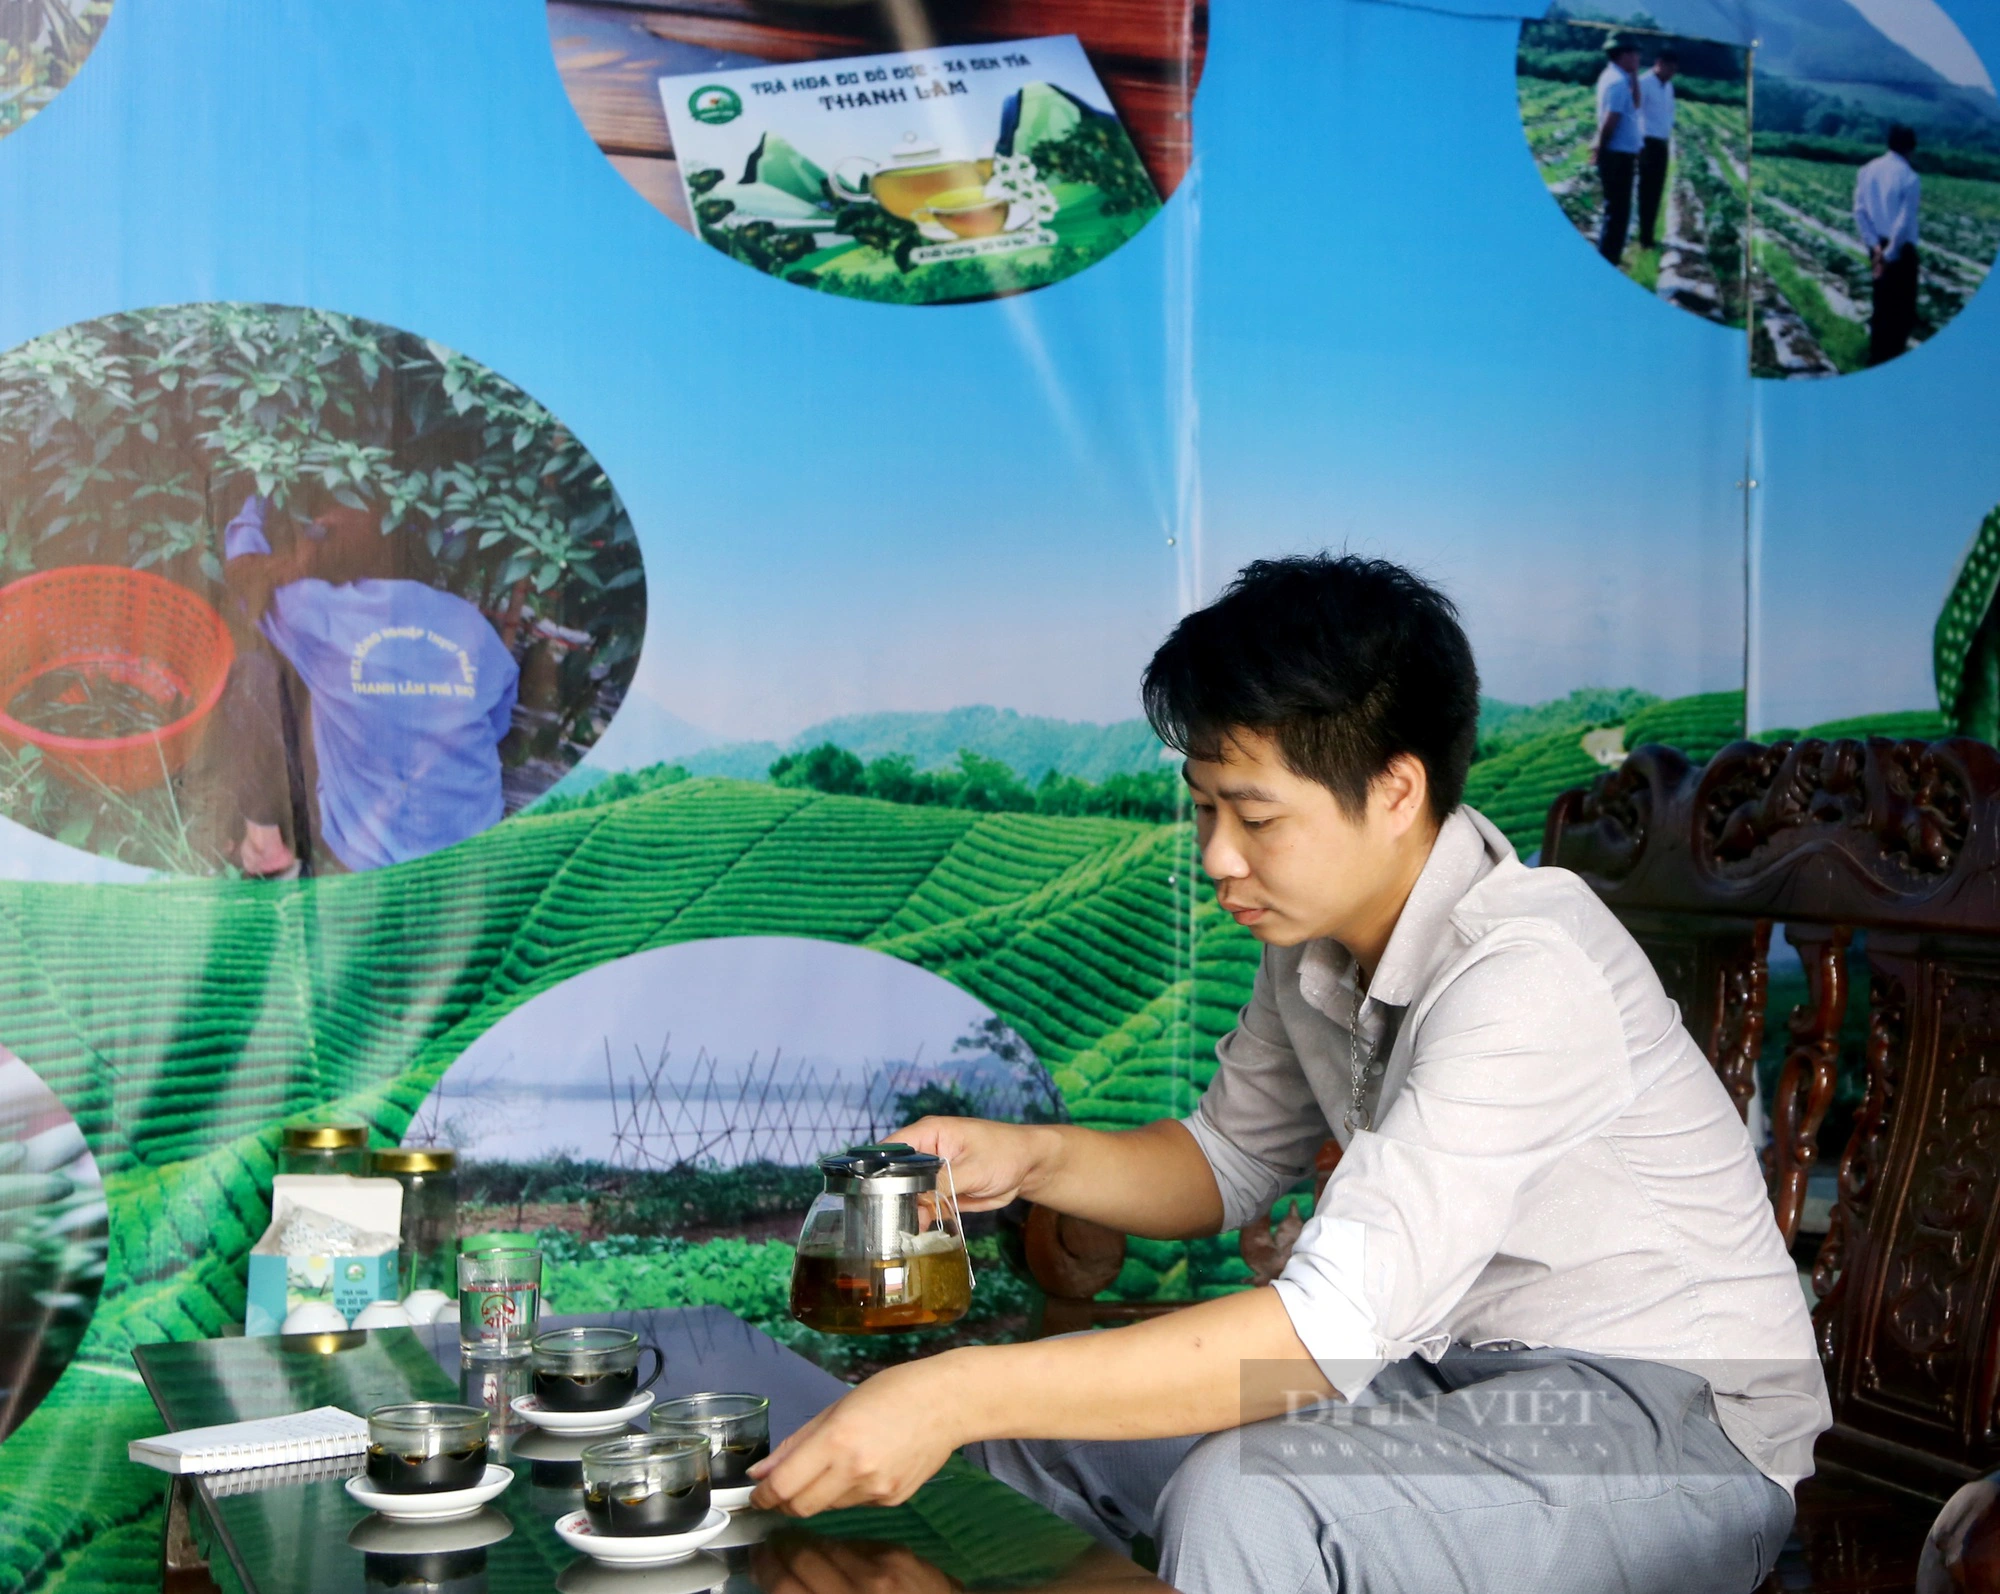 Giám đốc hợp tác xã 9X ở Phú Thọ thu tiền tỷ từ sản xuất trà hoa đu đủ đực - Ảnh 2.